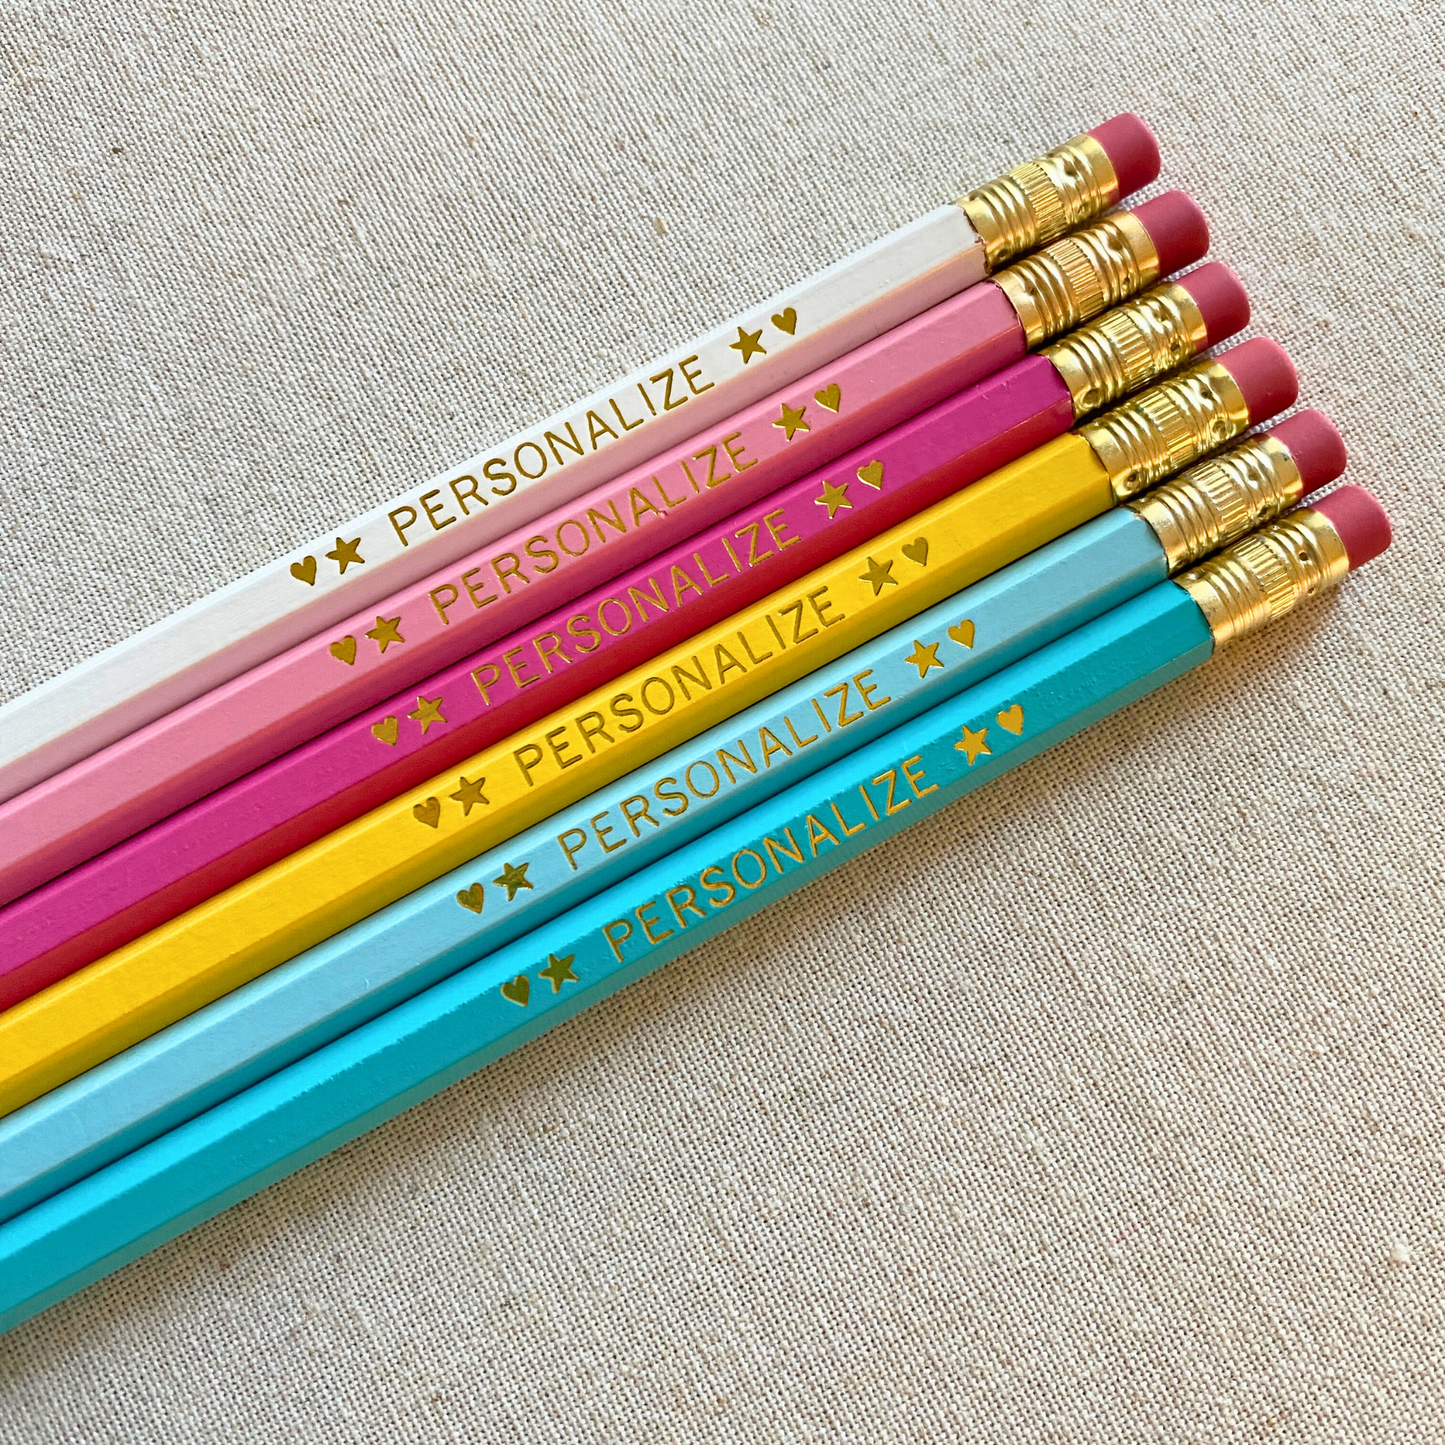 6 Personalized Pencil Set AQUA DELIGHT